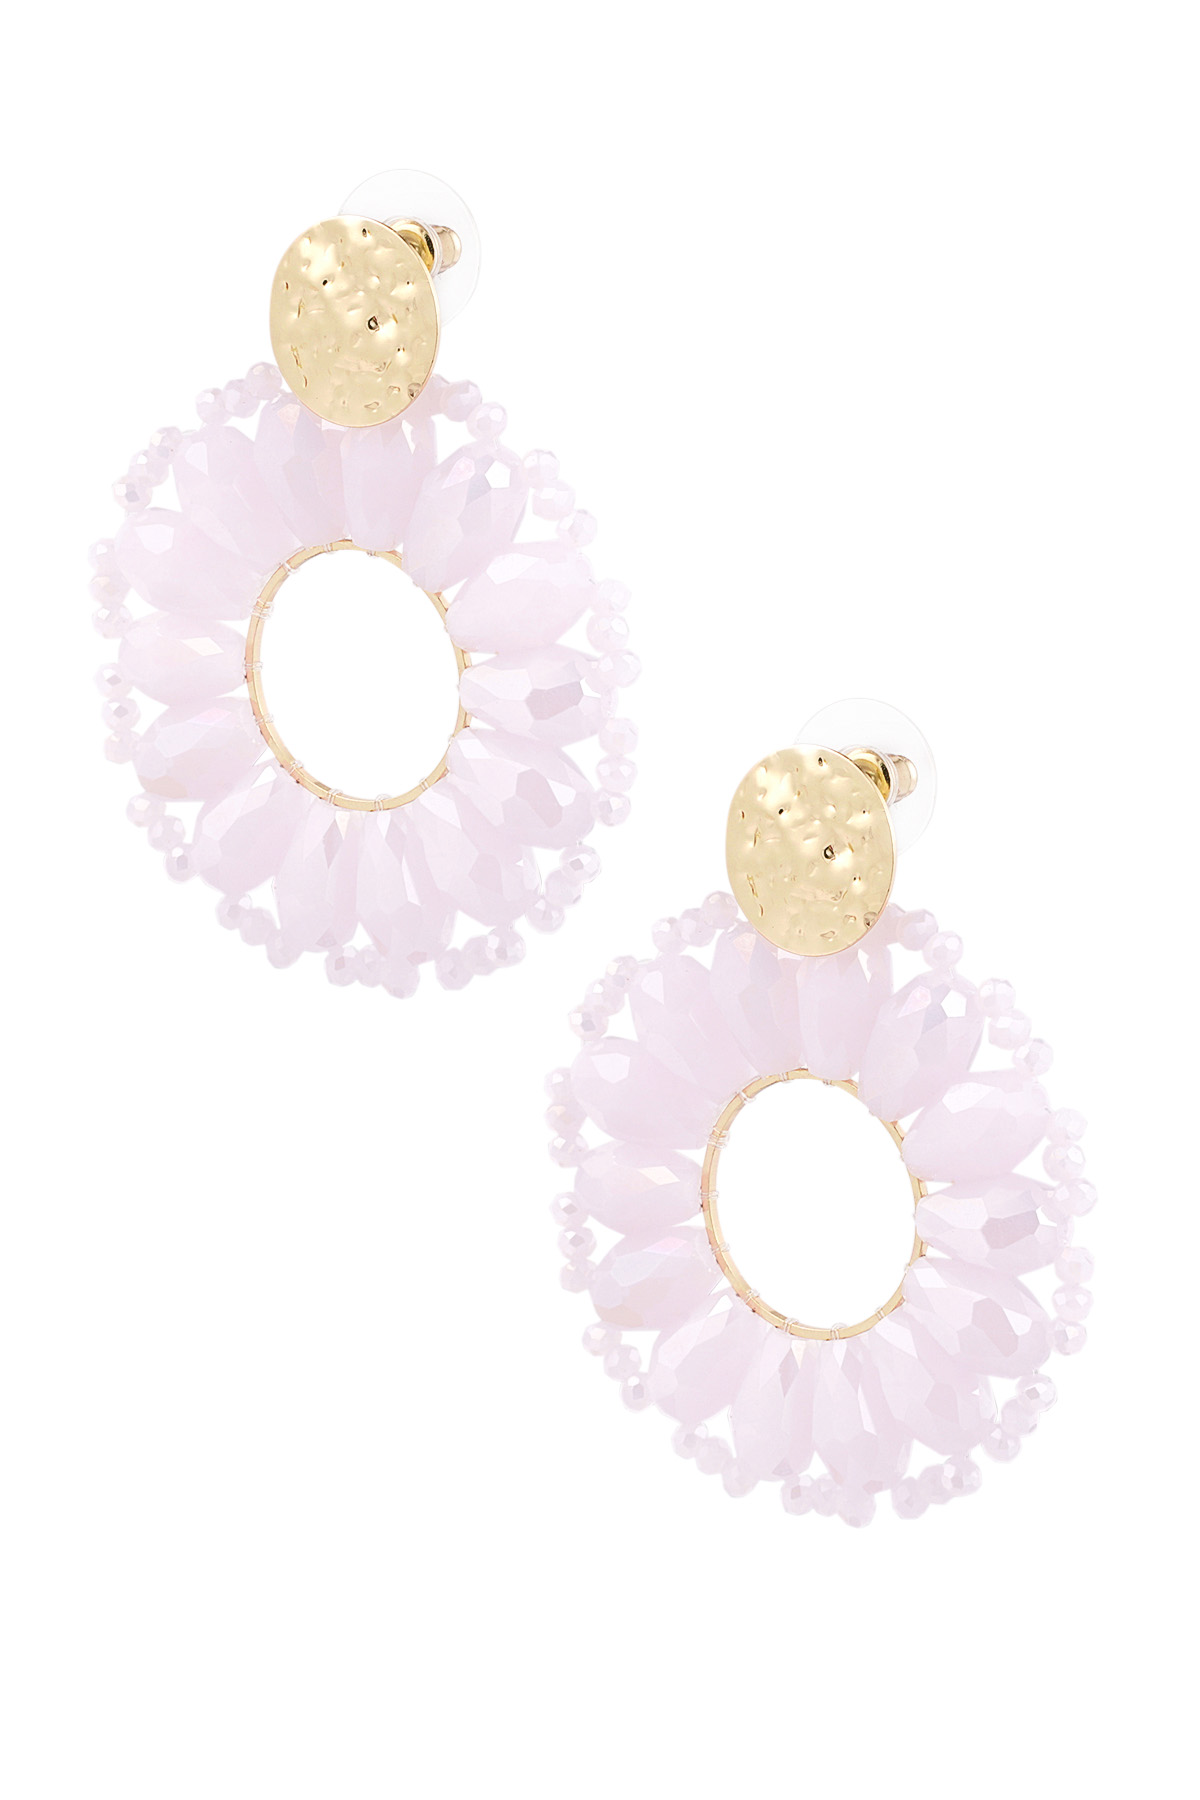 Statement daisy shape earrings - pale pink